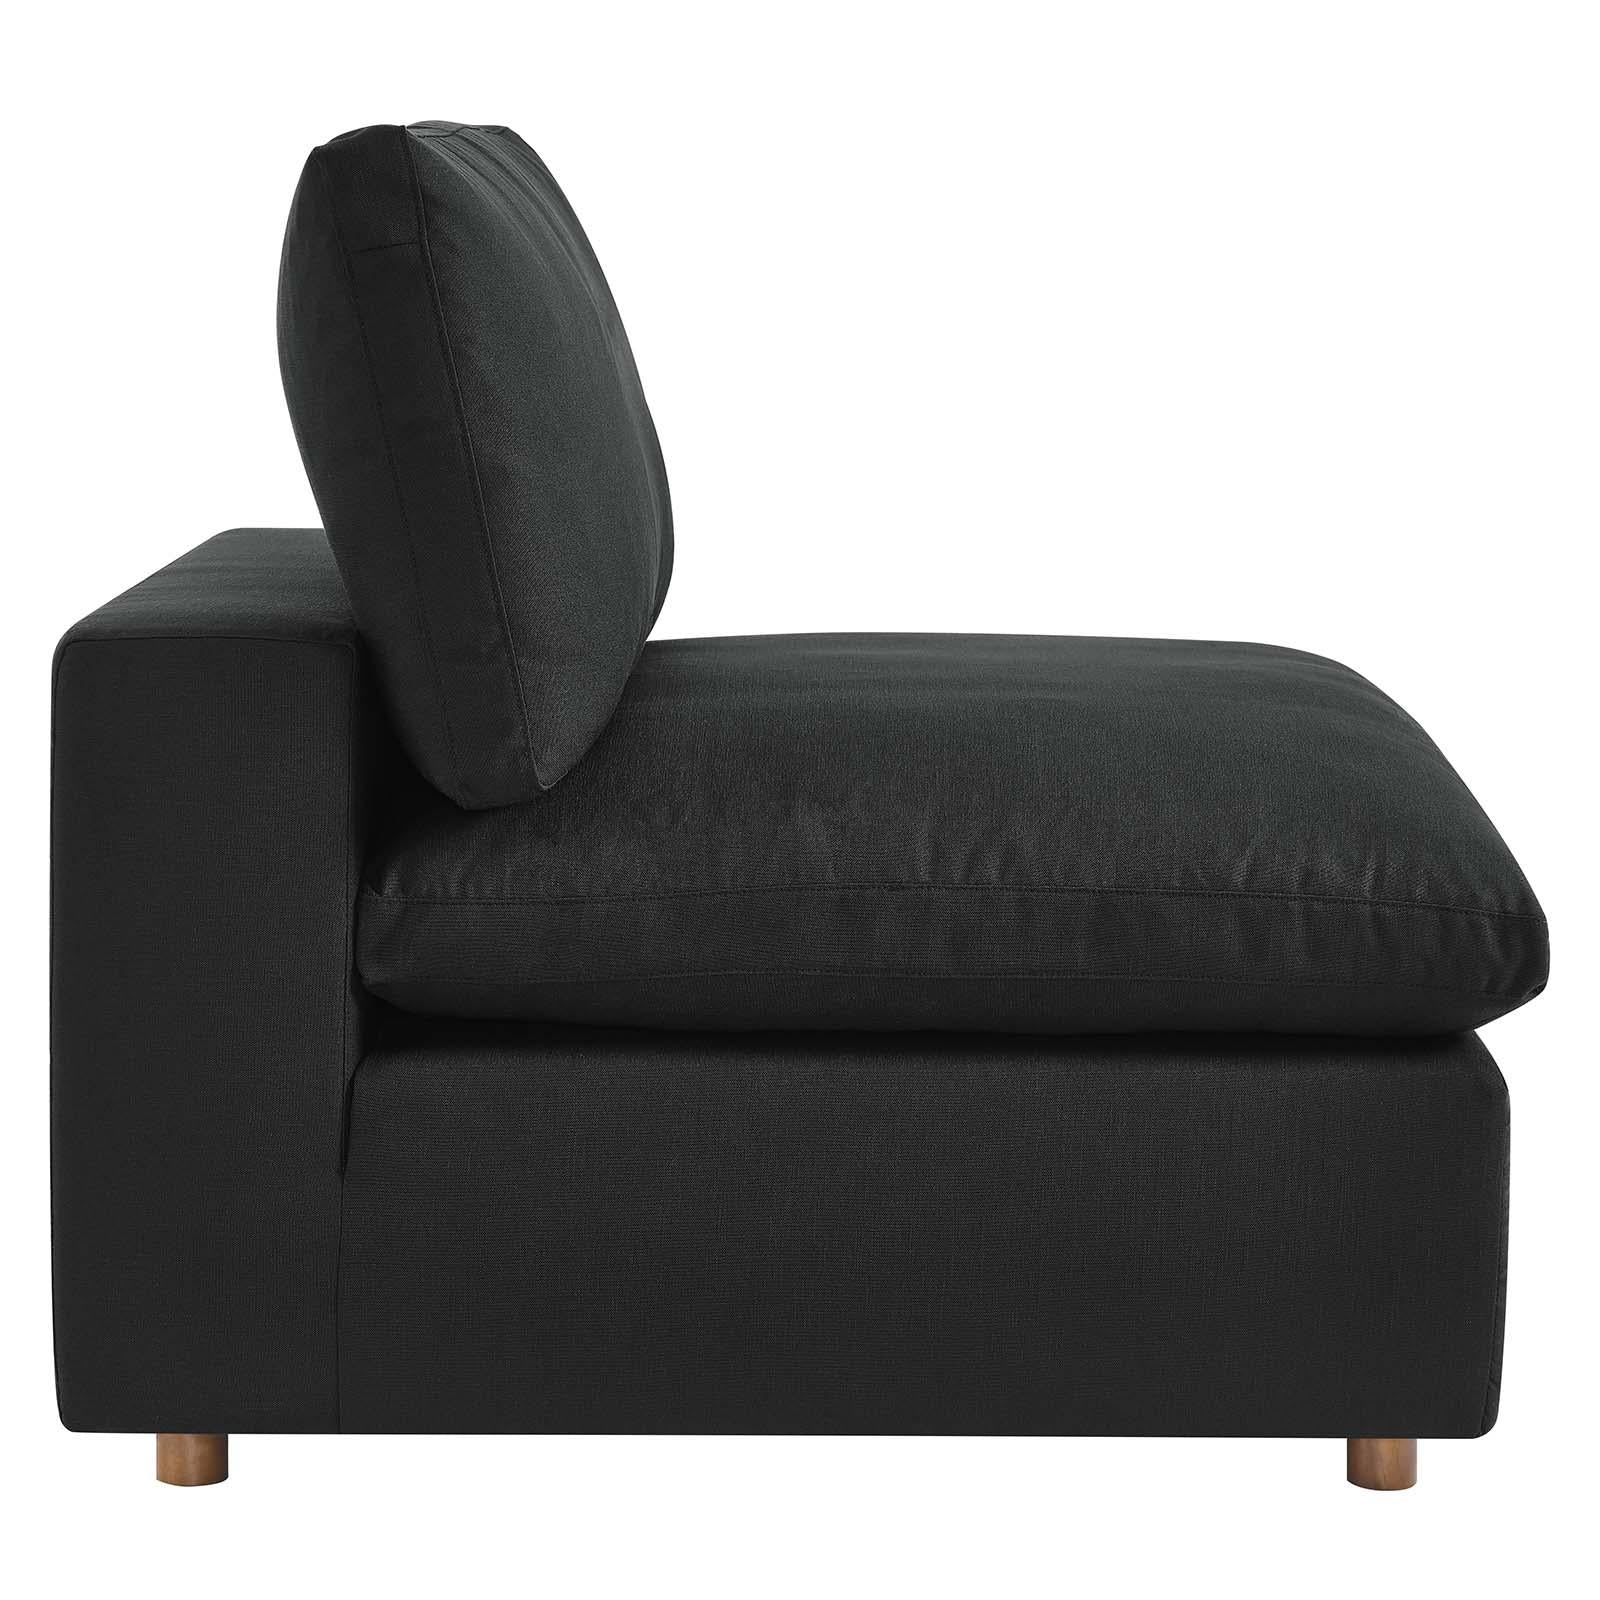 Modway Furniture Modern Commix Down Filled Overstuffed 4 Piece Sectional Sofa Set - EEI-3357